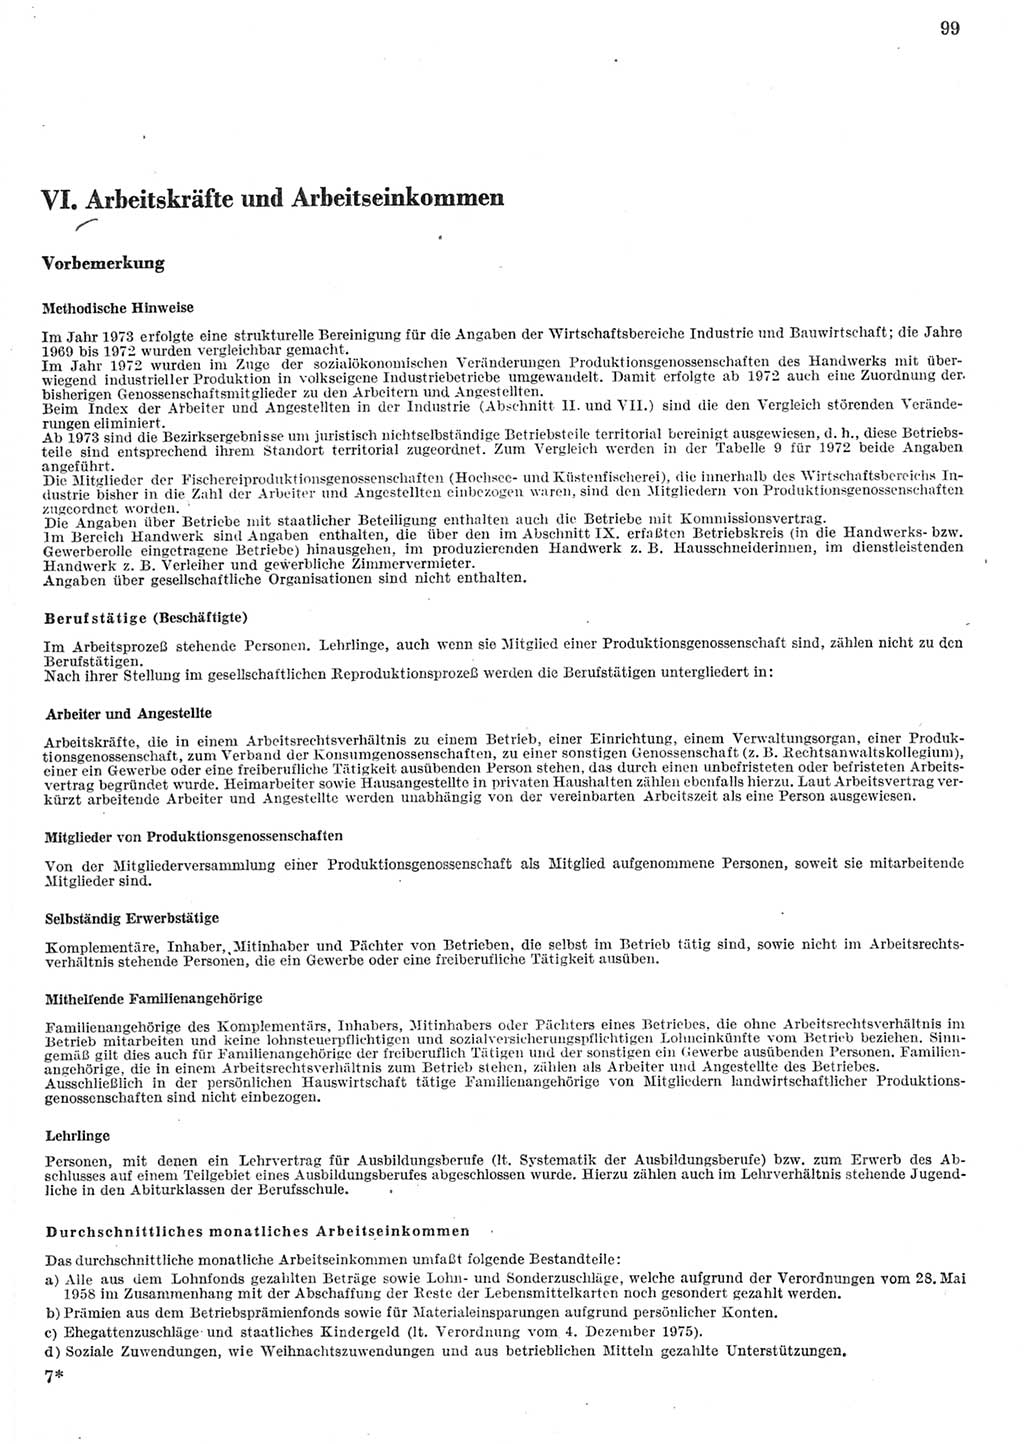 Statistisches Jahrbuch der Deutschen Demokratischen Republik (DDR) 1982, Seite 99 (Stat. Jb. DDR 1982, S. 99)